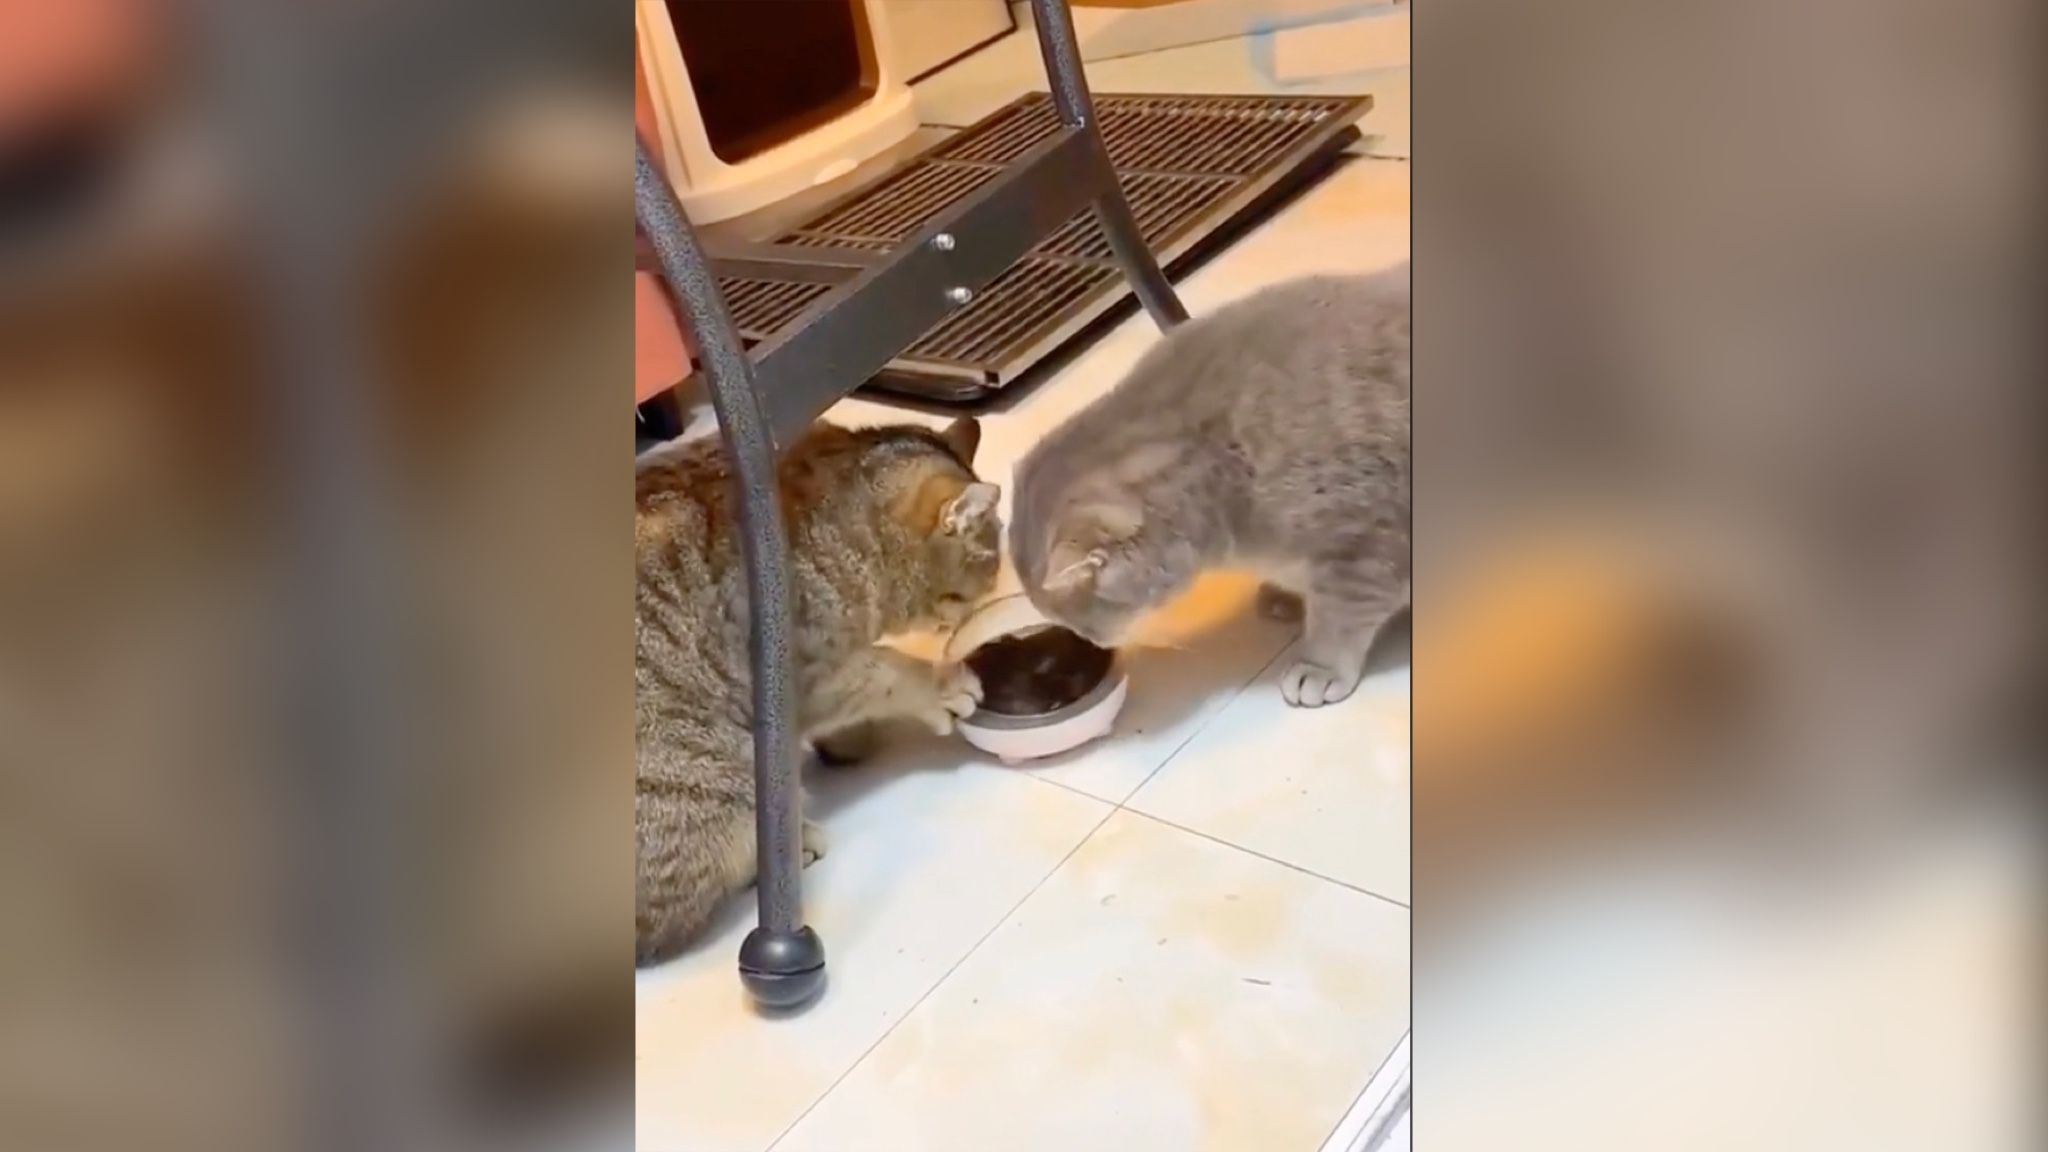 На видео попали воспитанные котики, которые любезно делятся обедом